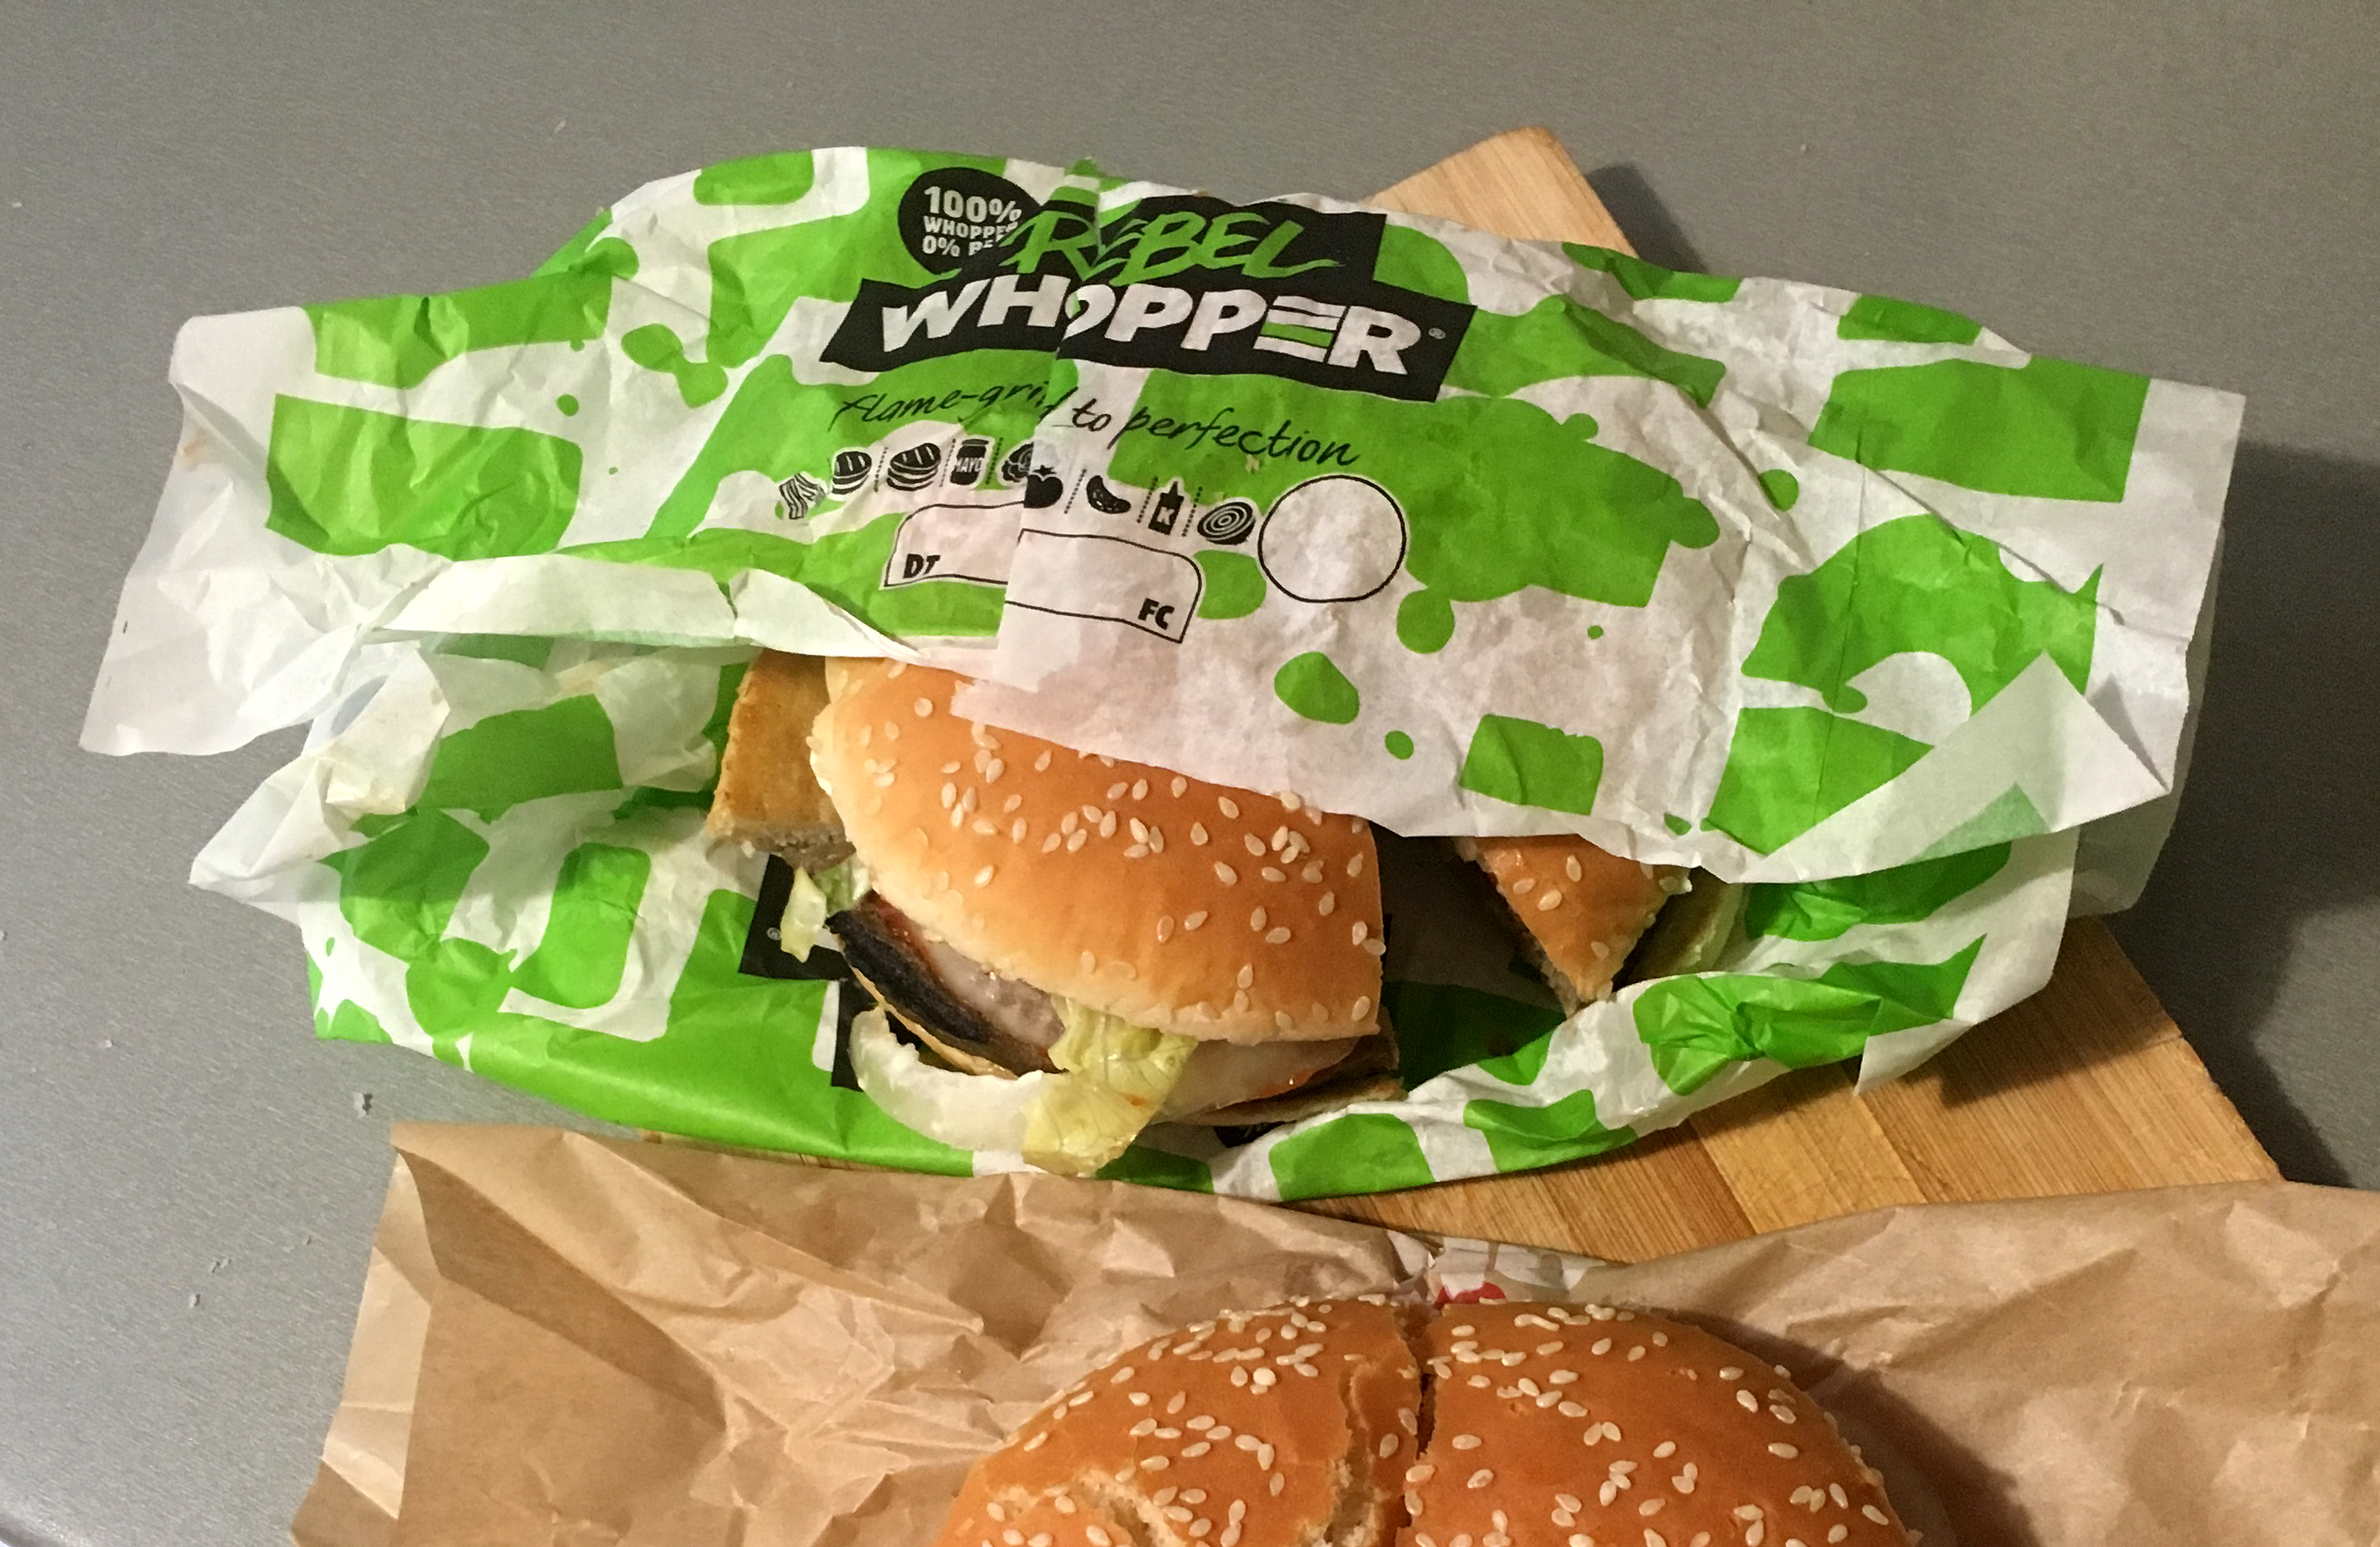 A magyarországi Burger King is előállt a húspótlós burgerrel, a Rebel Whopperrel